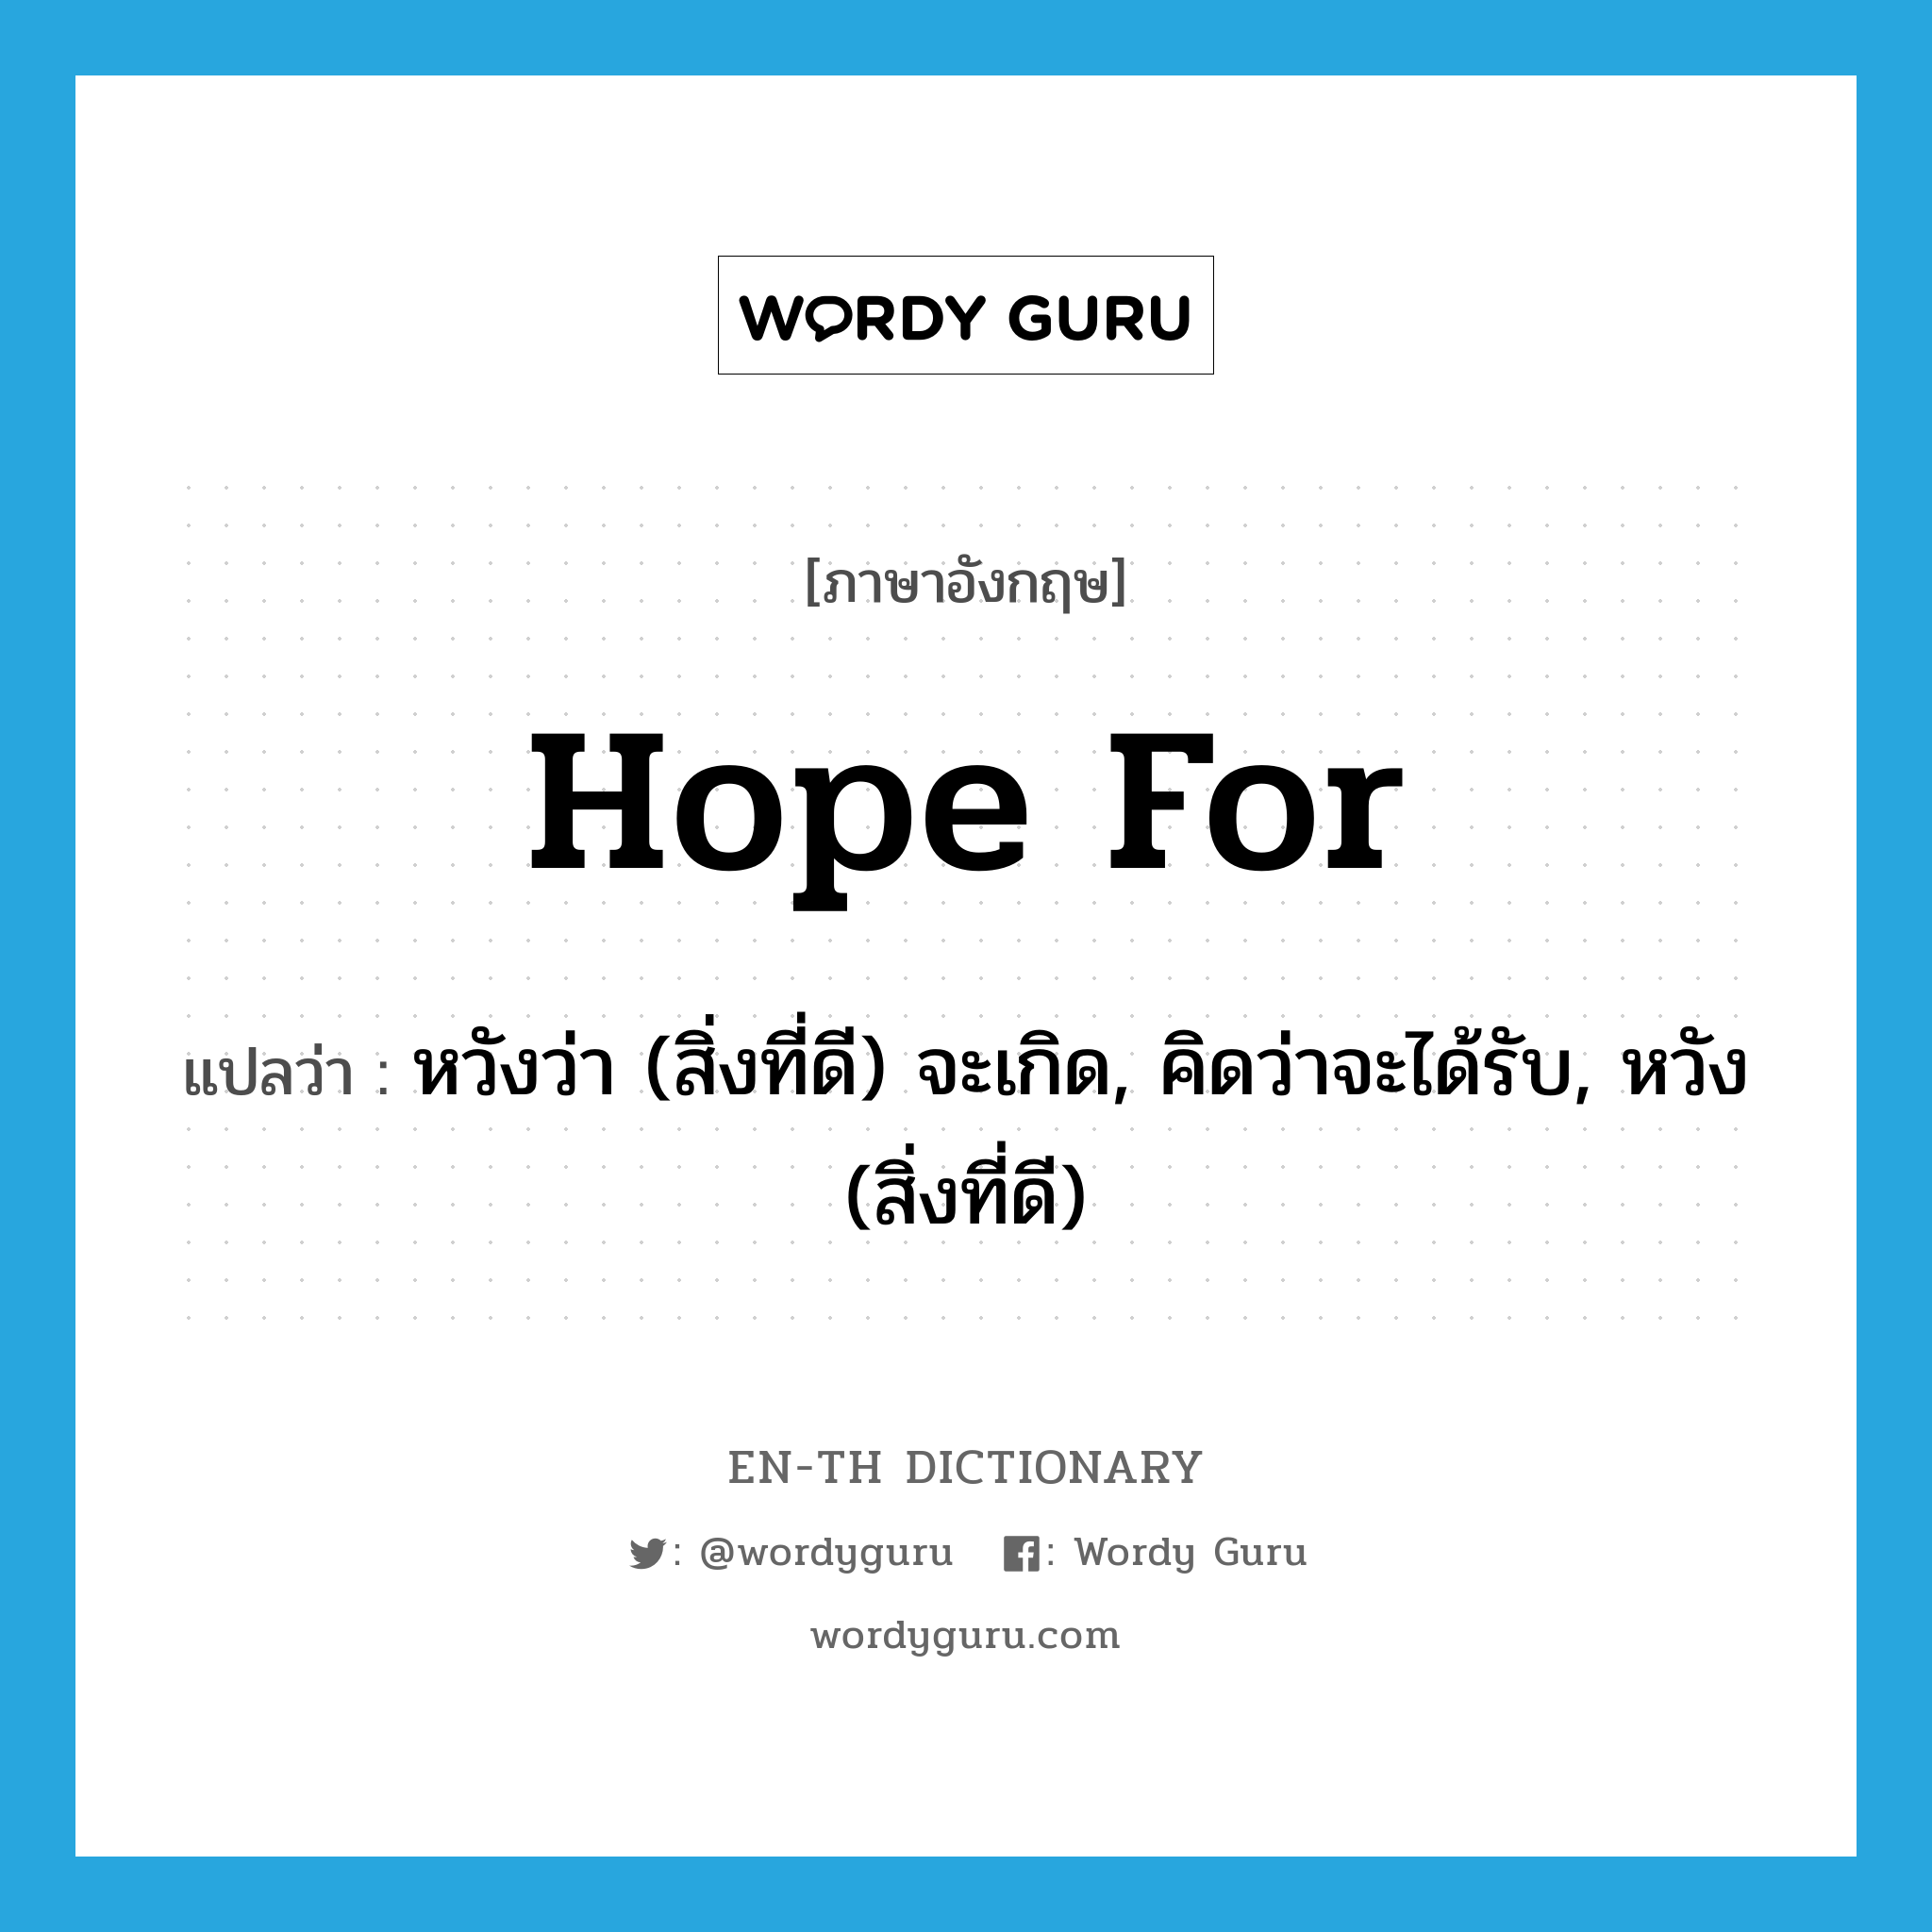 หวังว่า (สิ่งที่ดี) จะเกิด, คิดว่าจะได้รับ, หวัง (สิ่งที่ดี) ภาษาอังกฤษ?, คำศัพท์ภาษาอังกฤษ หวังว่า (สิ่งที่ดี) จะเกิด, คิดว่าจะได้รับ, หวัง (สิ่งที่ดี) แปลว่า hope for ประเภท PHRV หมวด PHRV